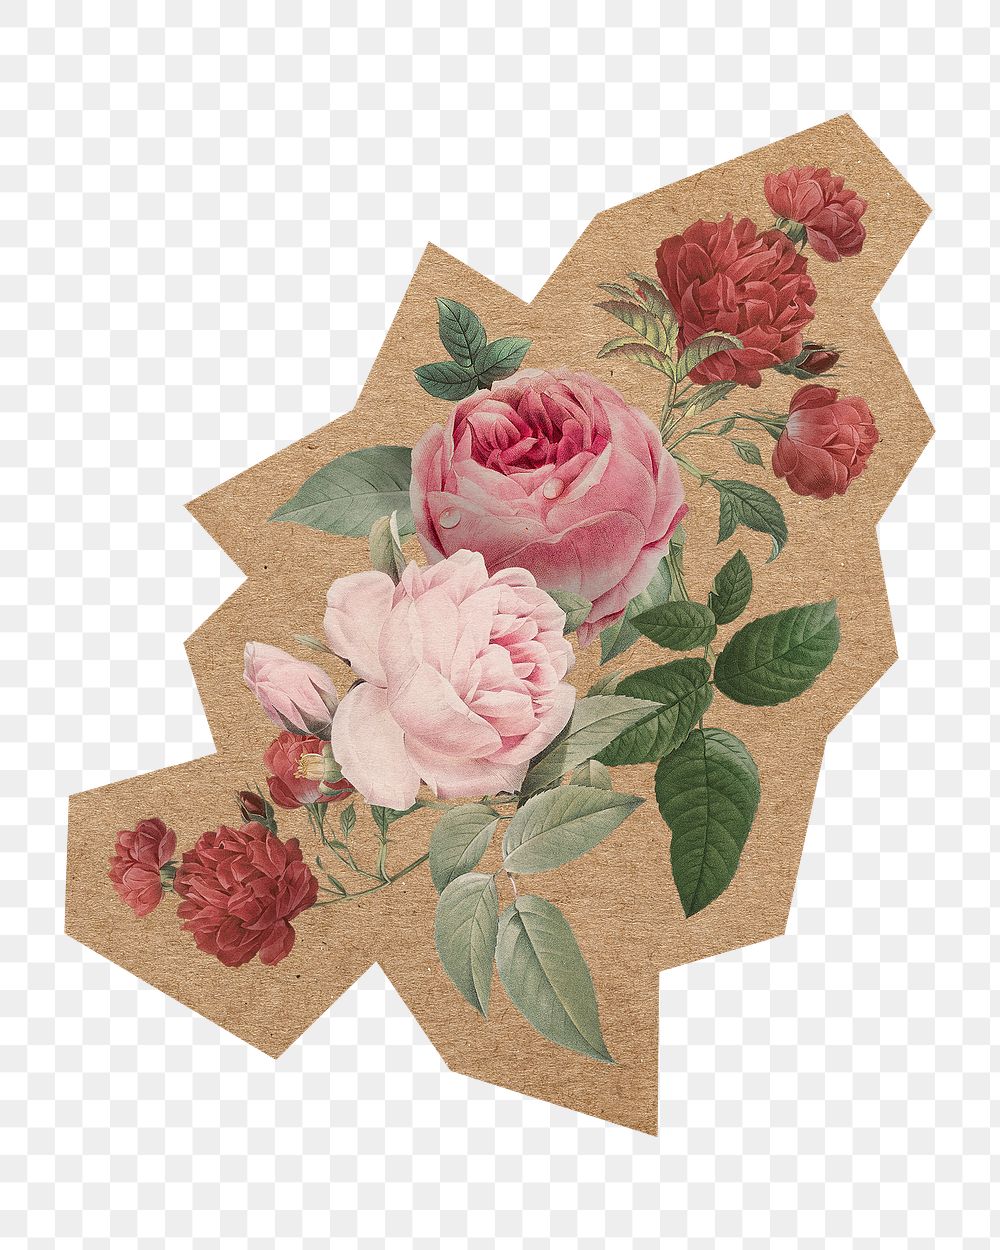 Vintage flower illustration png, cut out paper element, transparent background